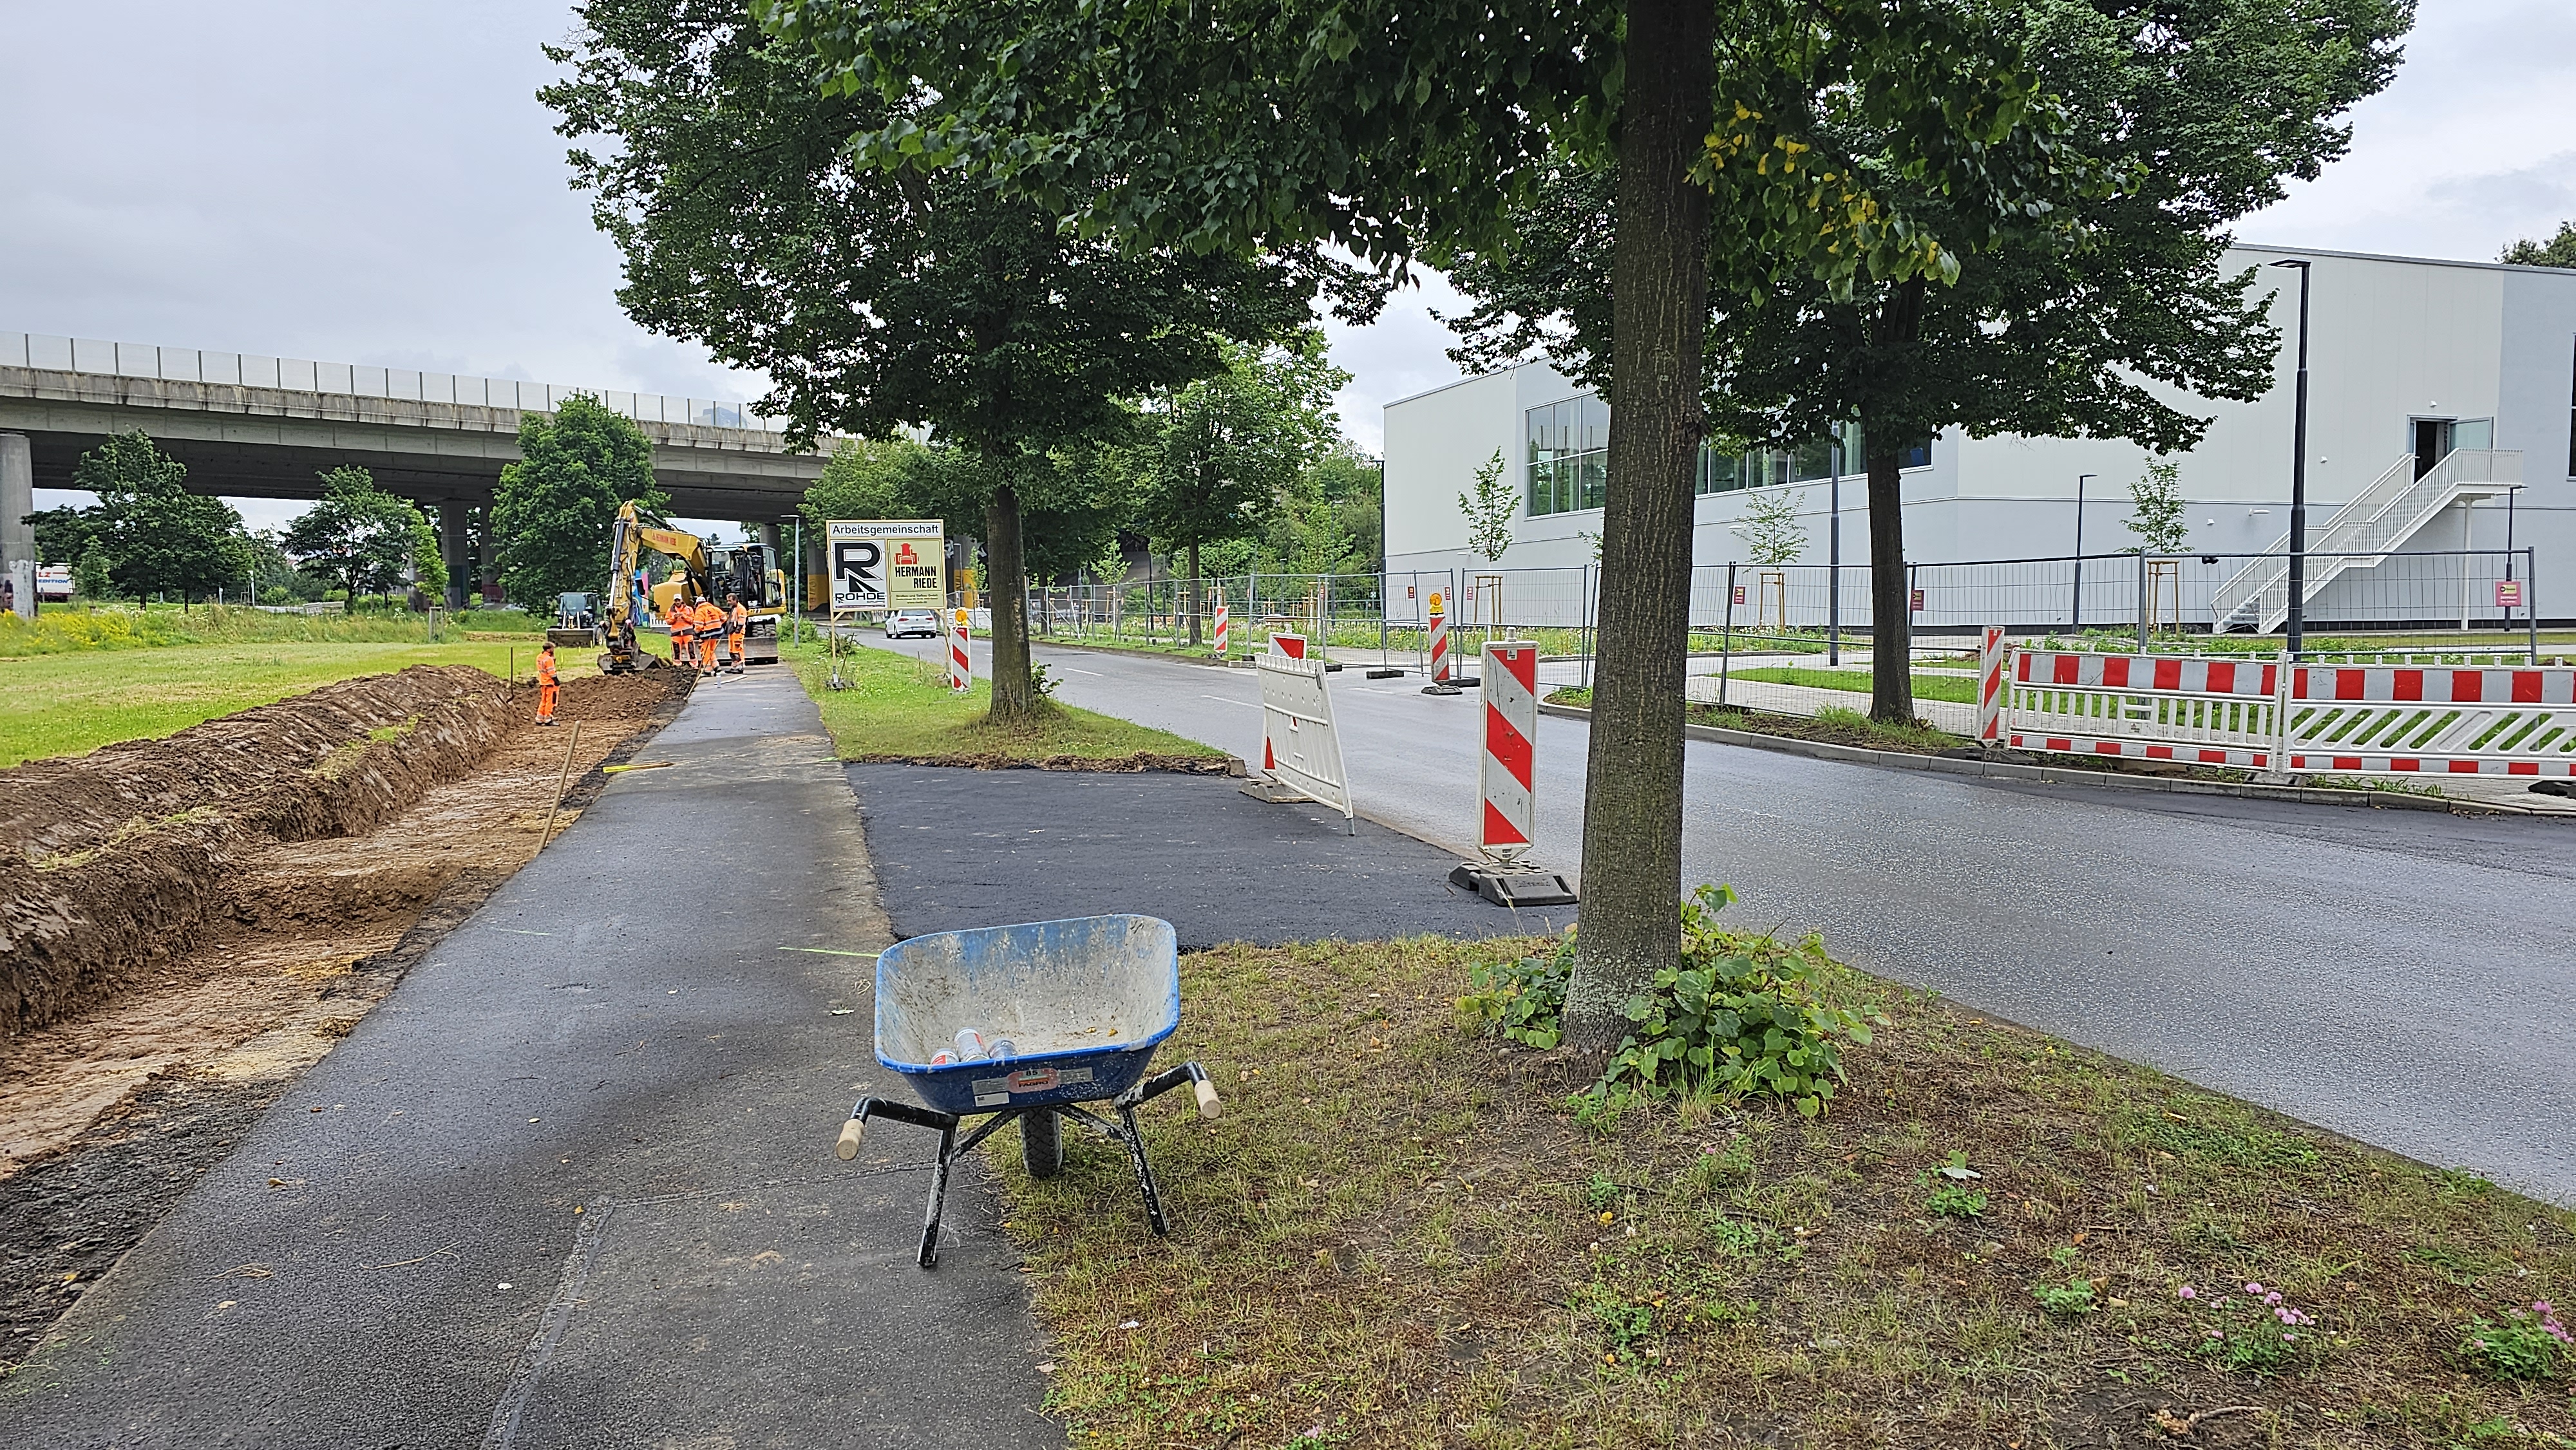 Der Fuß- und Radweg wird bis Ende August gesperrt bleiben, um Platz für eine Ersatzfahrspur für unsere Einsatzkräfte zu schaffen.  @Gemeinde Niestetal